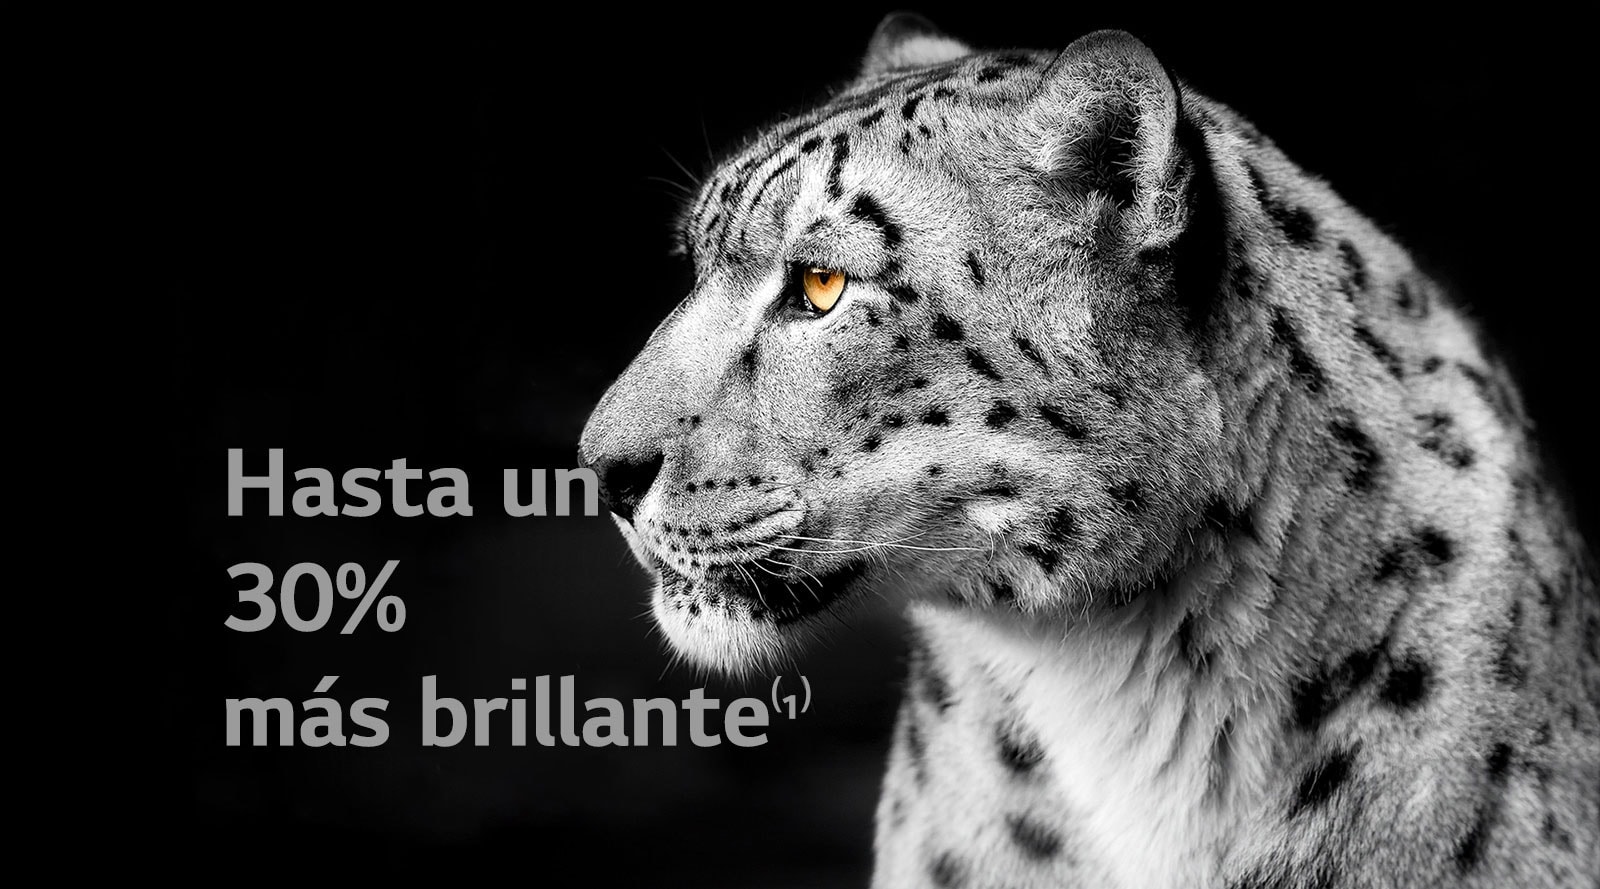 Un leopardo blanco mostrando su cara lateral en el lado izquierdo de la imagen. Las palabras "Hasta un 30% más brillante" aparecen a la izquierda.